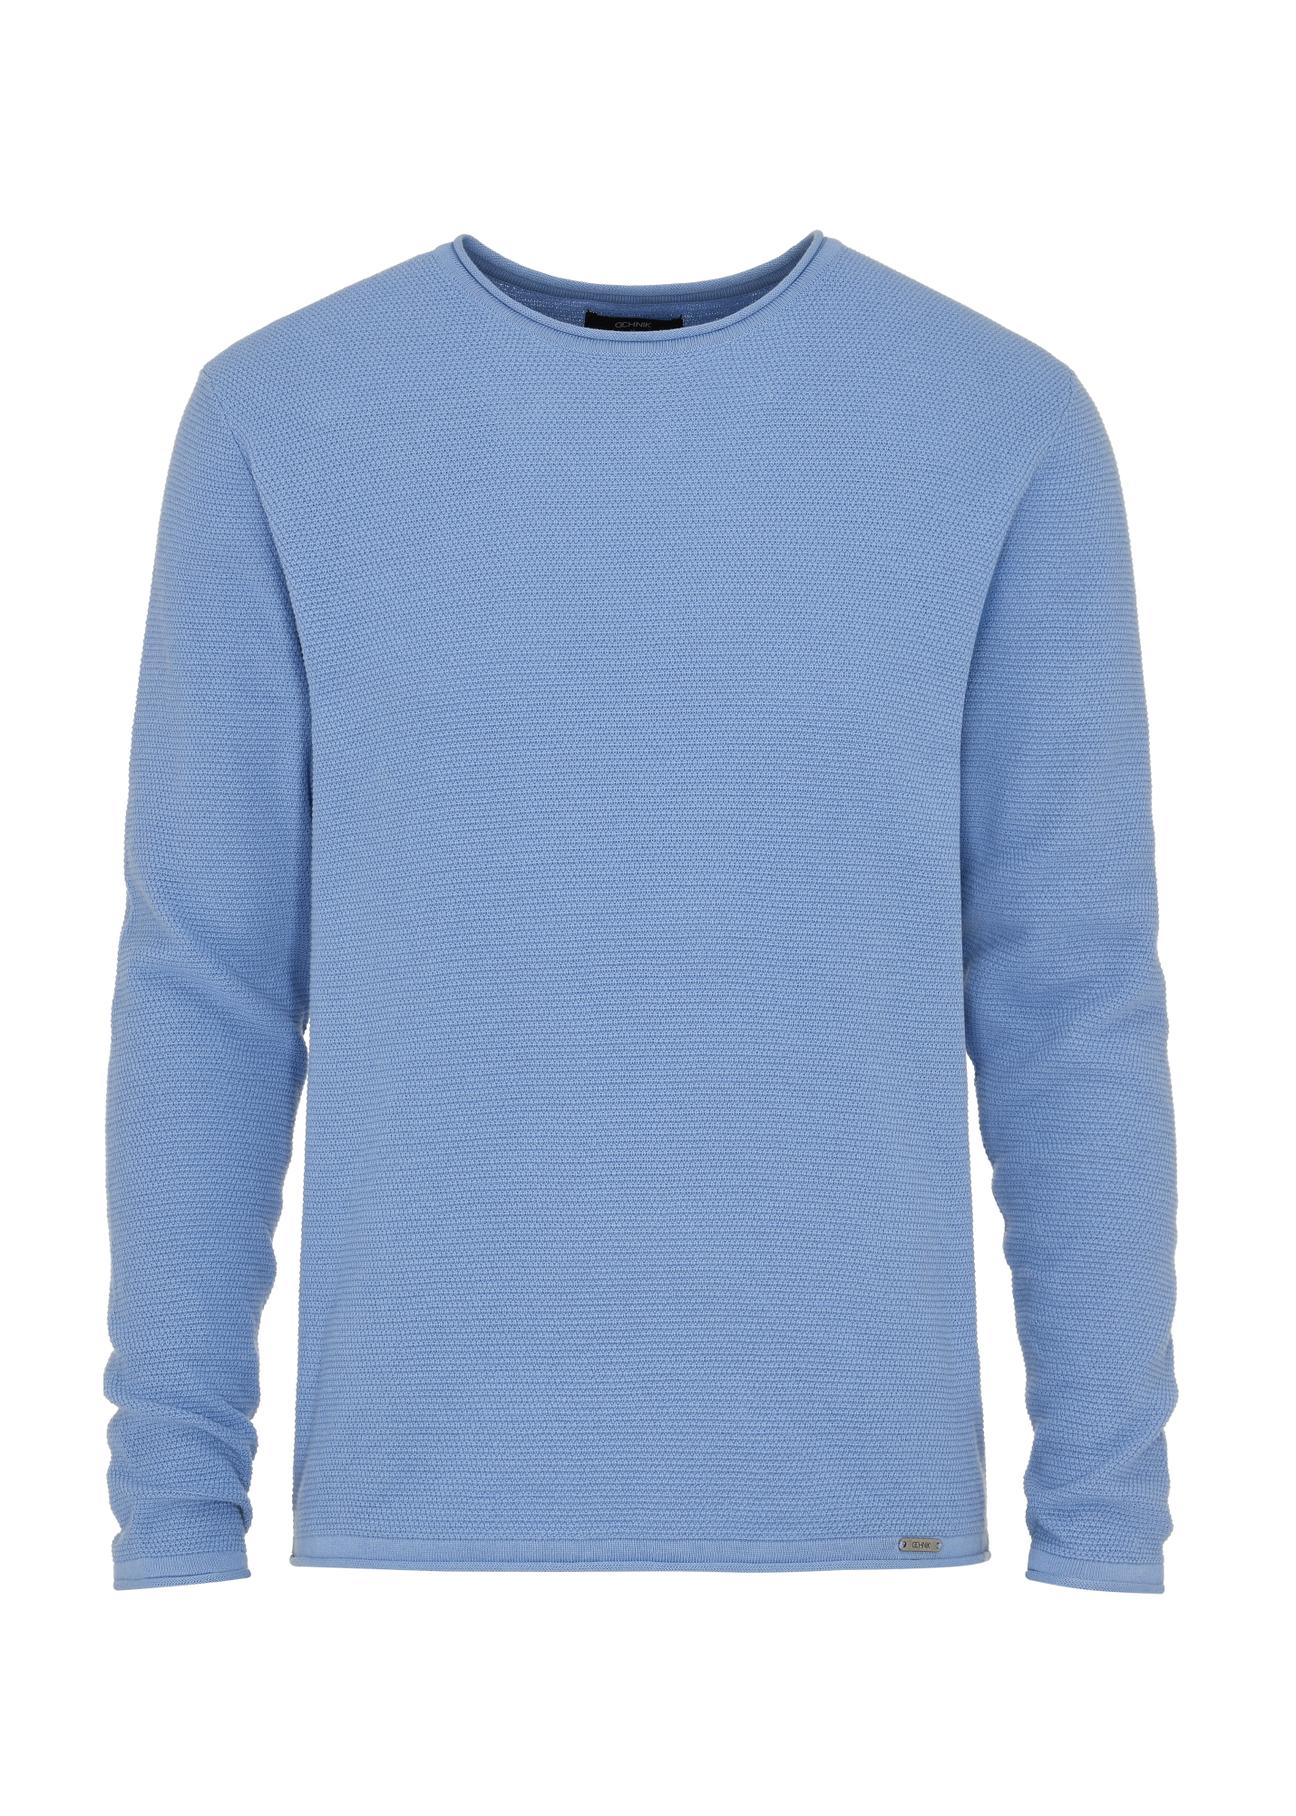 Niebieski sweter męski basic SWEMT-0128-62(W24)